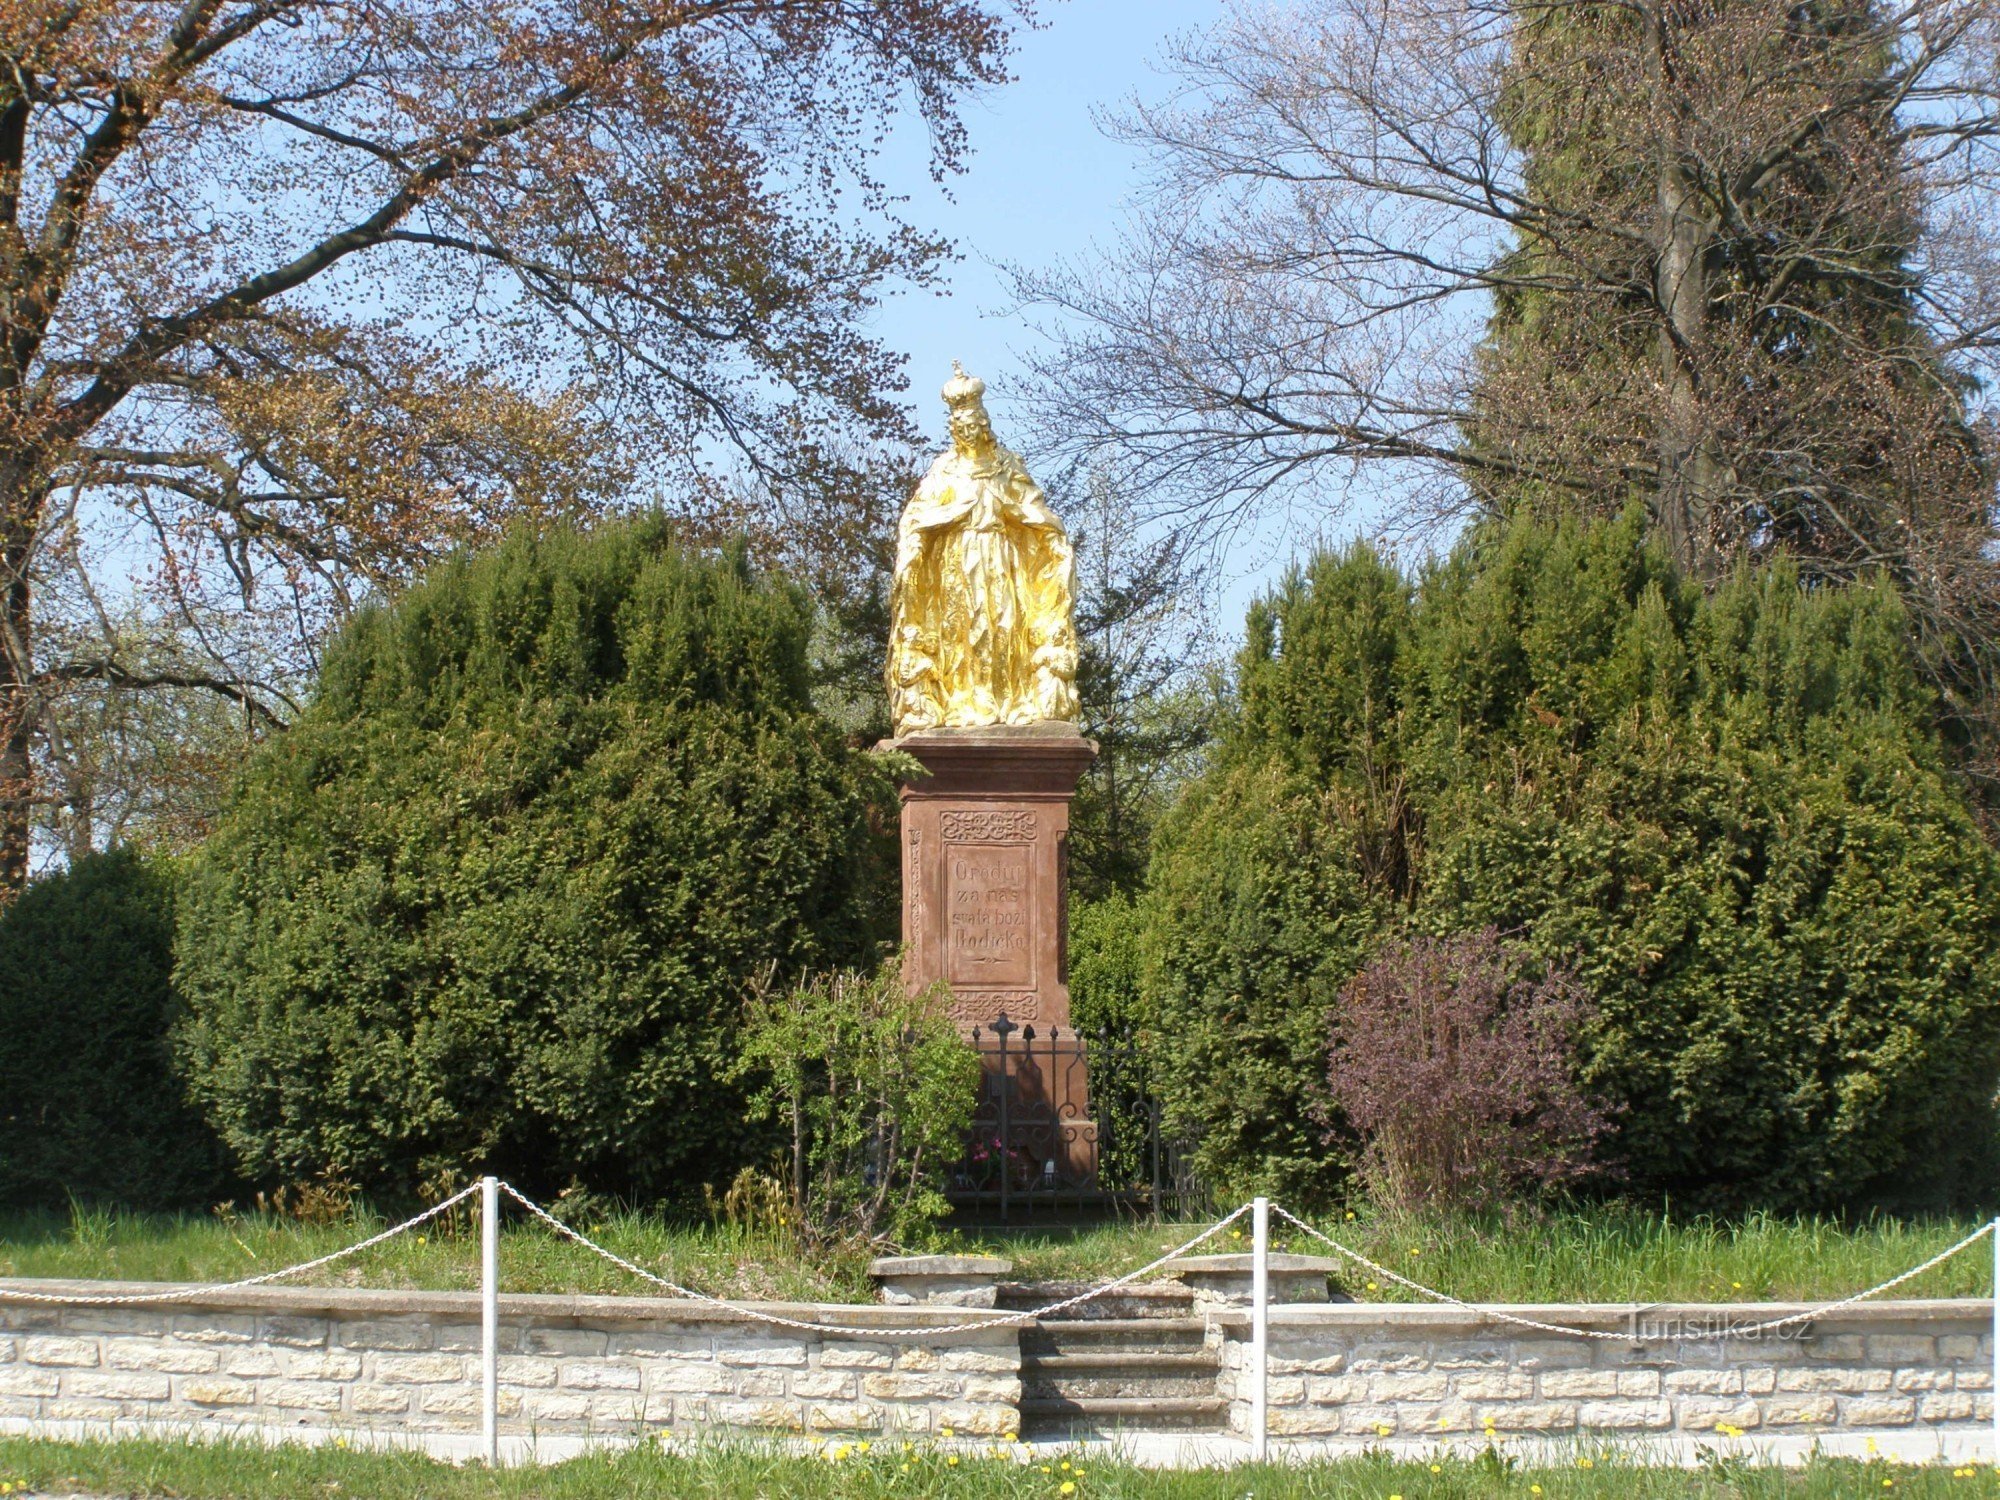 Bohuslavice nad Metují - statuie aurita a Fecioarei Maria